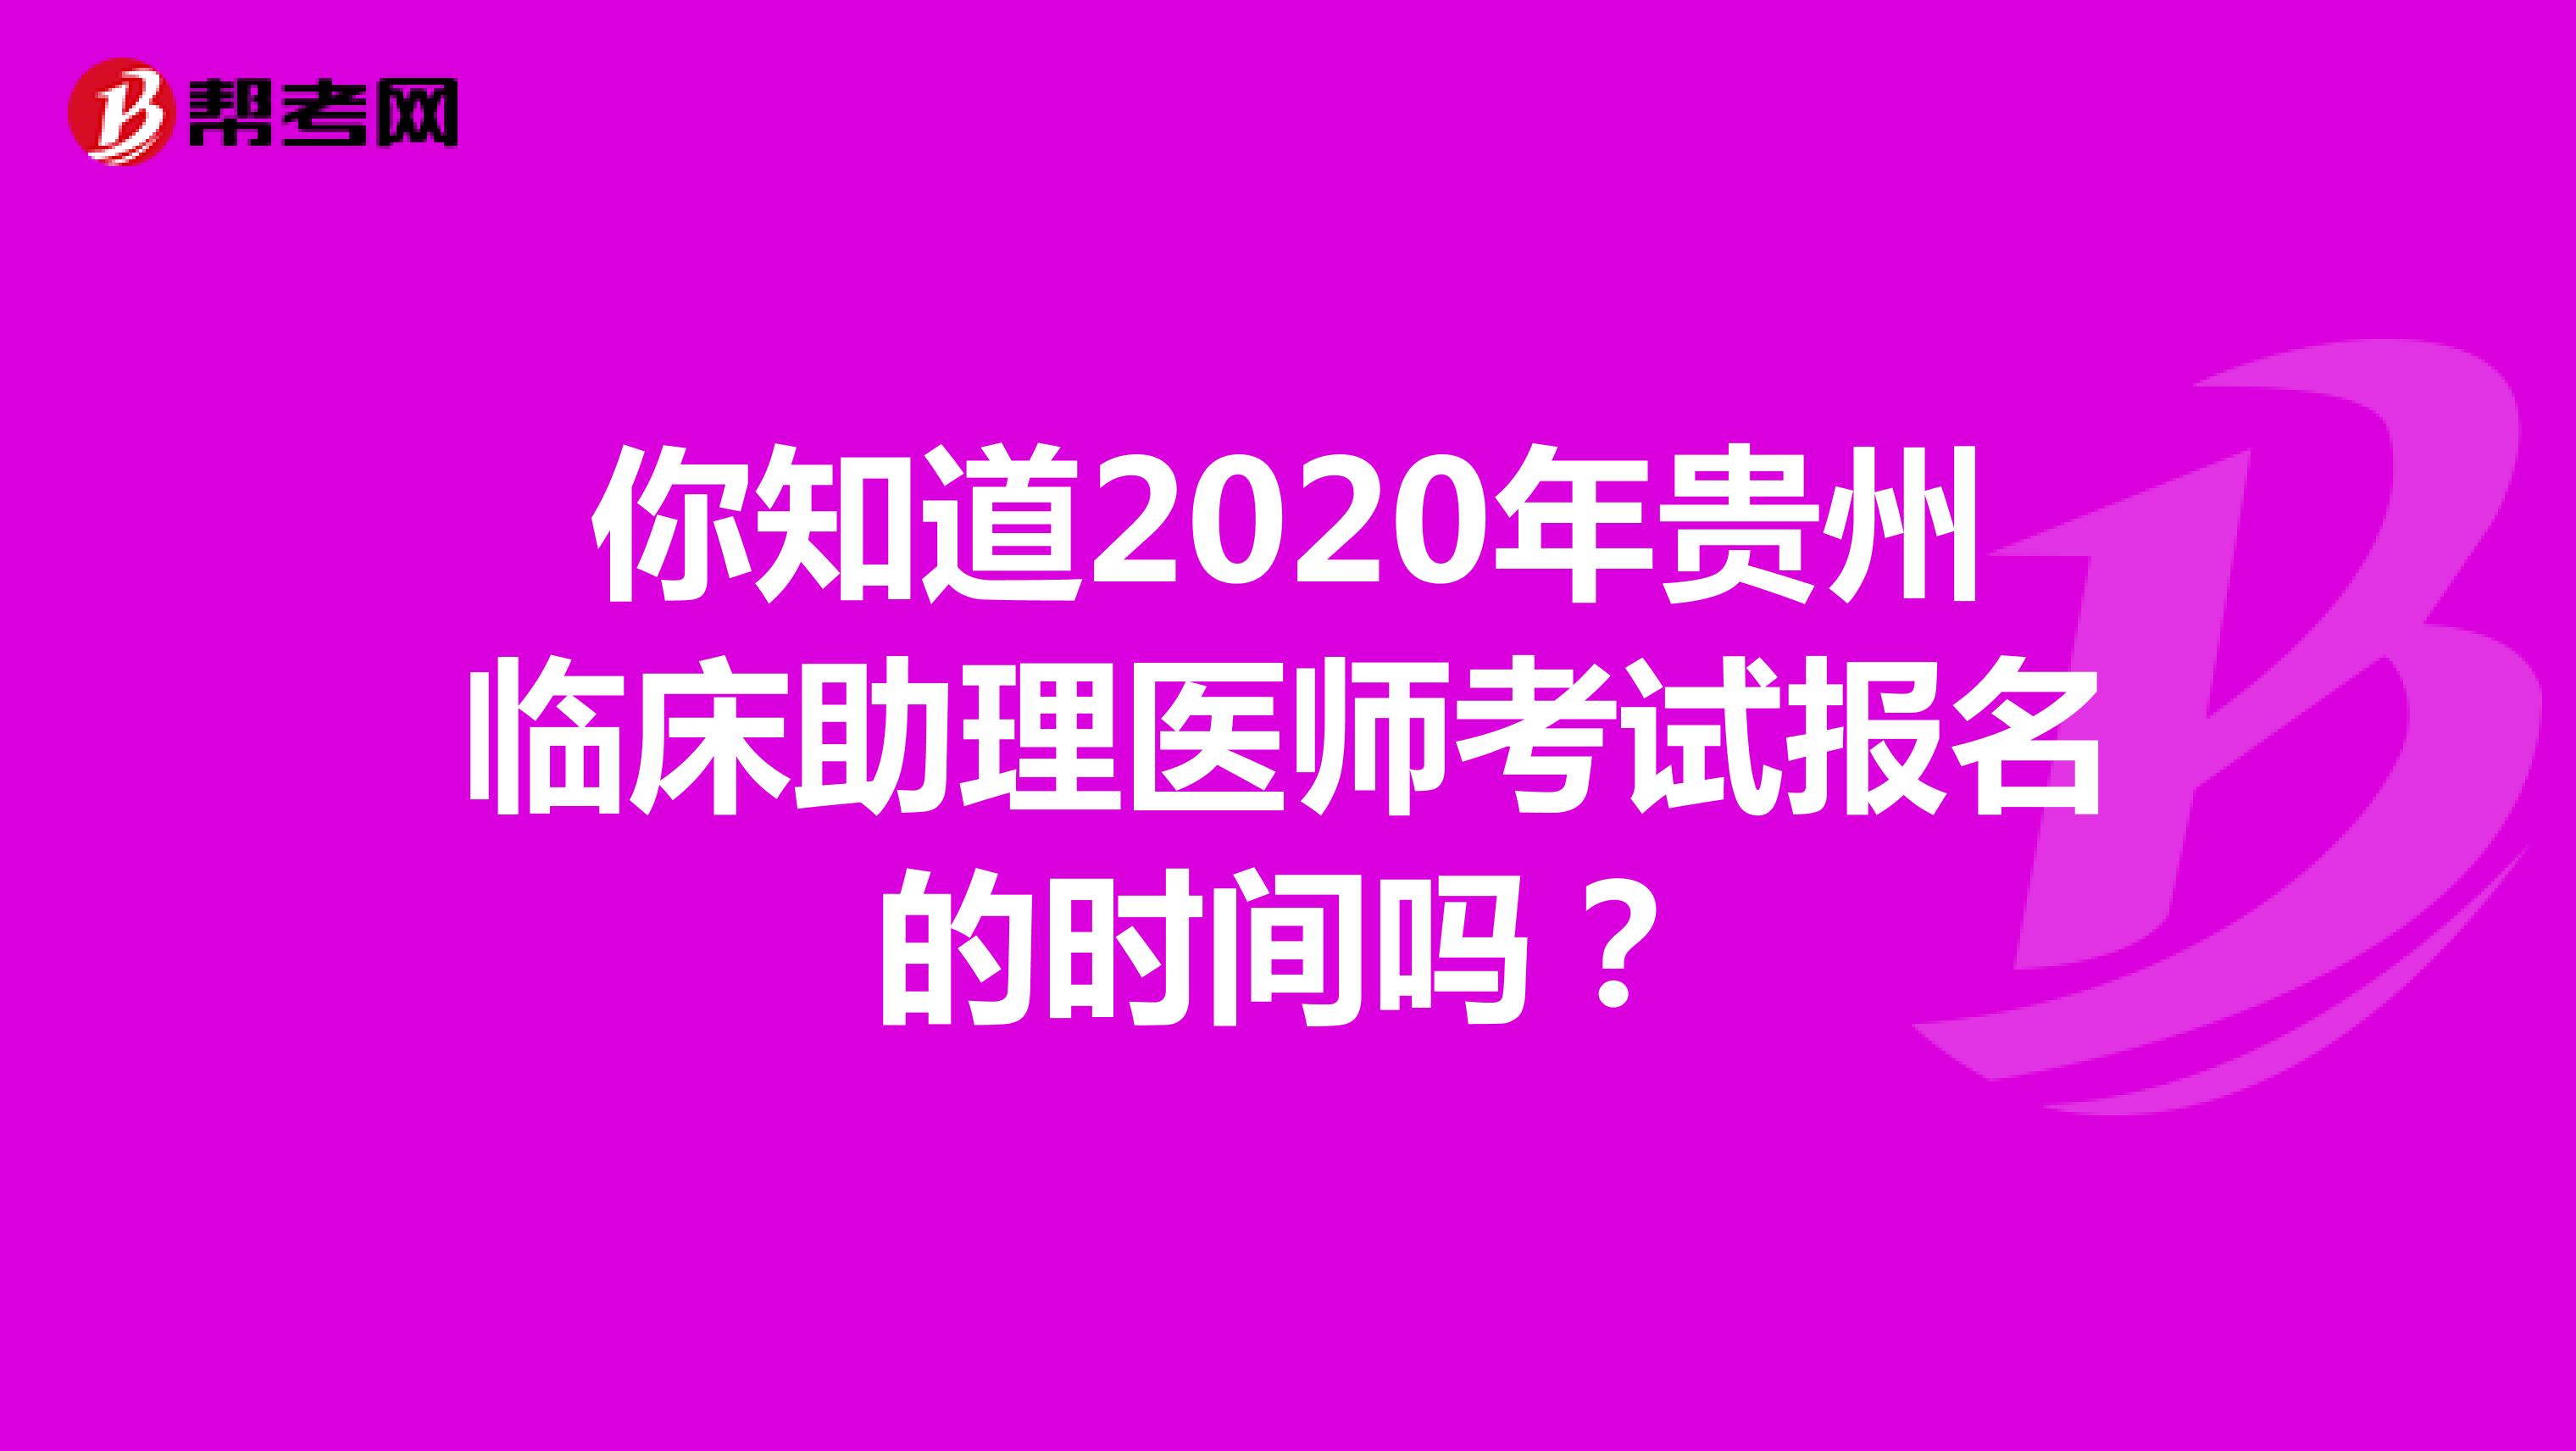 你知道2021年贵州临床助理医师考试报名的时间吗？